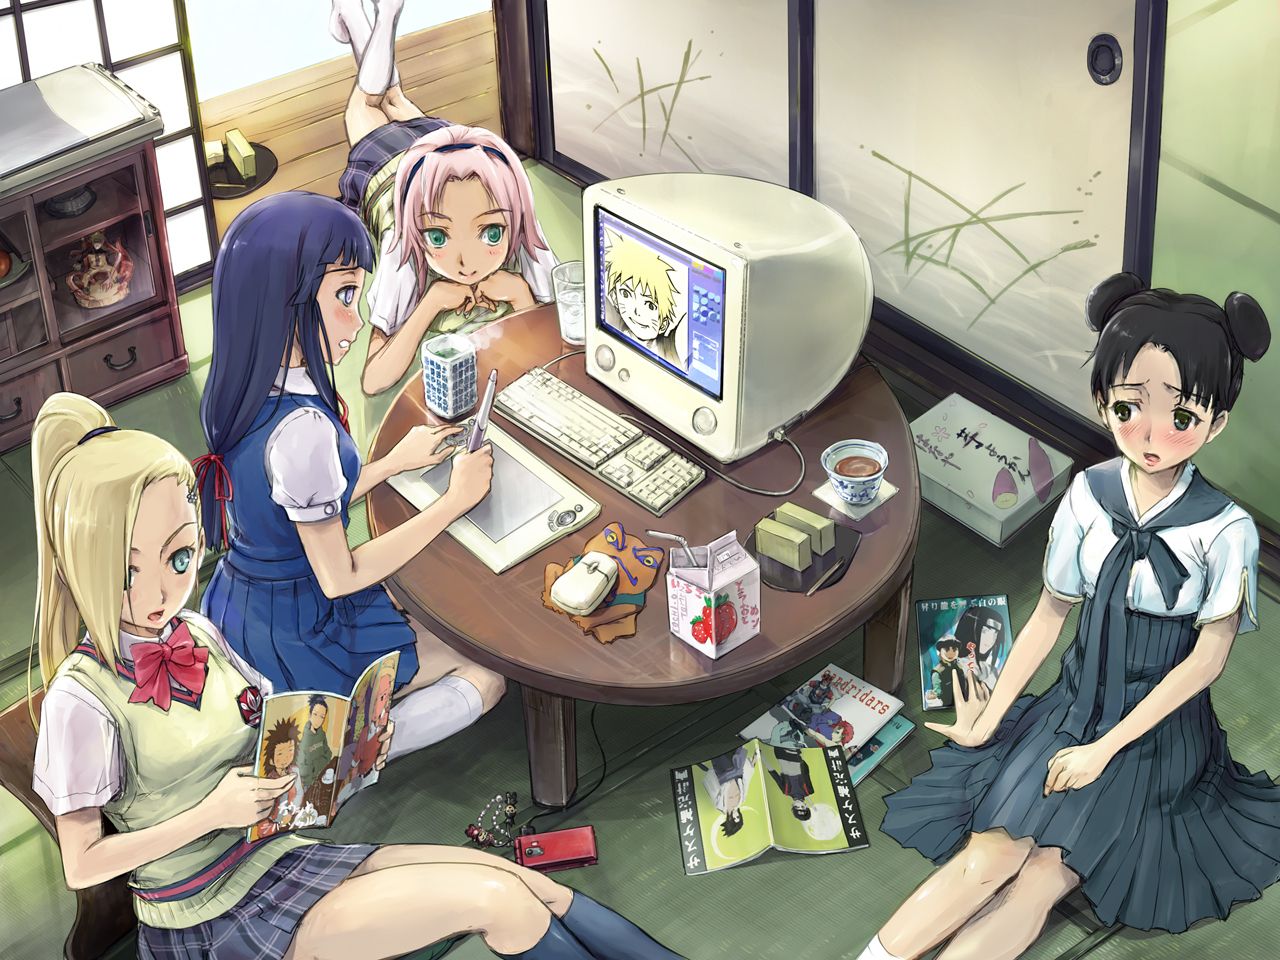 sakura,hinata,tenten and ino - naruto girls Wallpaper (25361781 ...